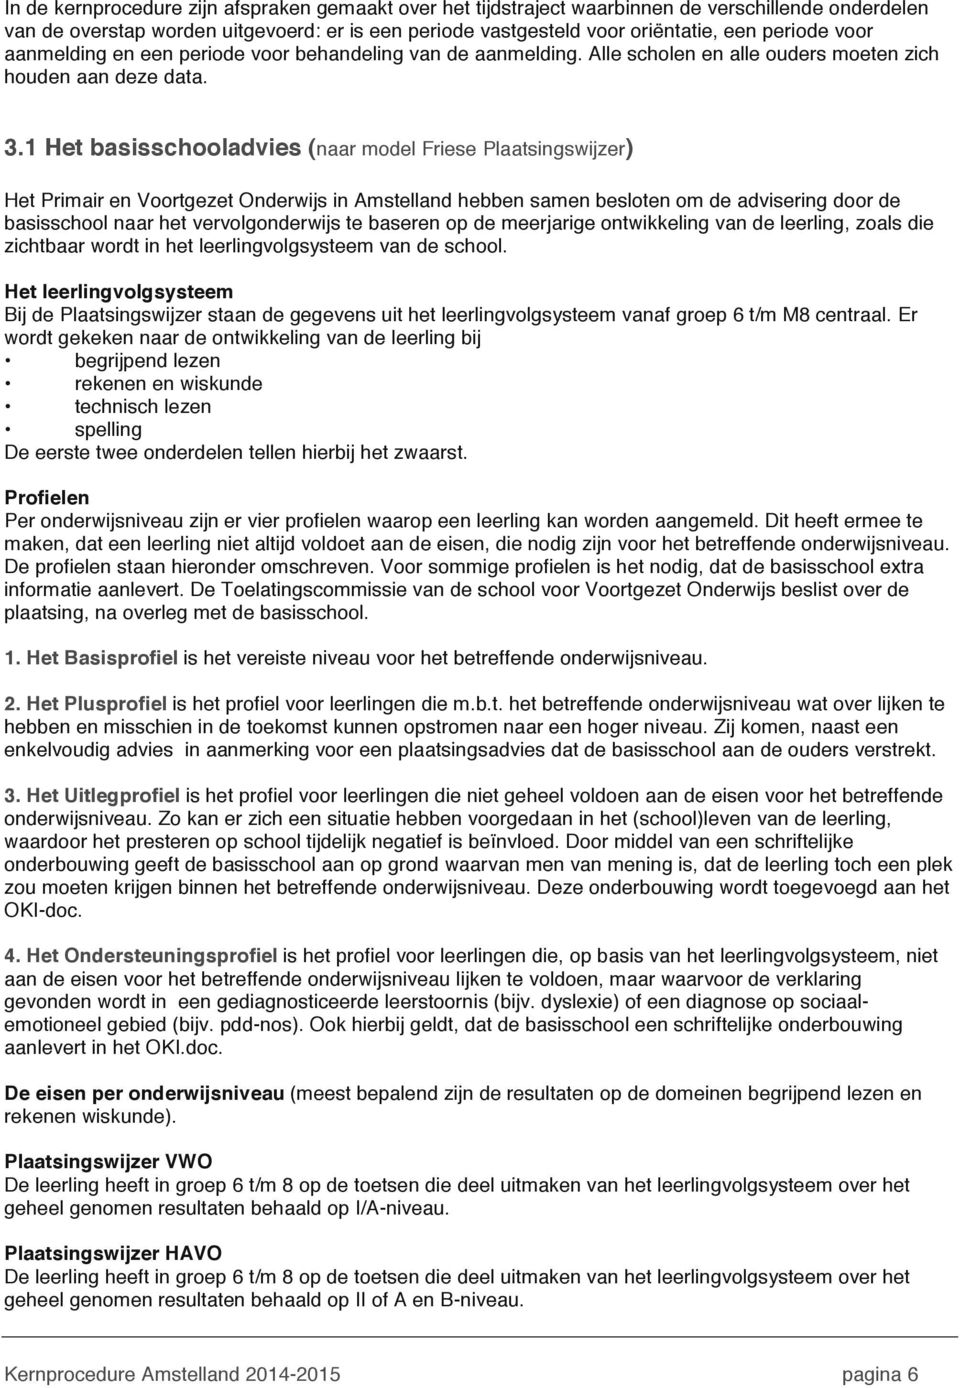 1 Het basisschooladvies (naar model Friese Plaatsingswijzer) Het Primair en Voortgezet Onderwijs in Amstelland hebben samen besloten om de advisering door de basisschool naar het vervolgonderwijs te